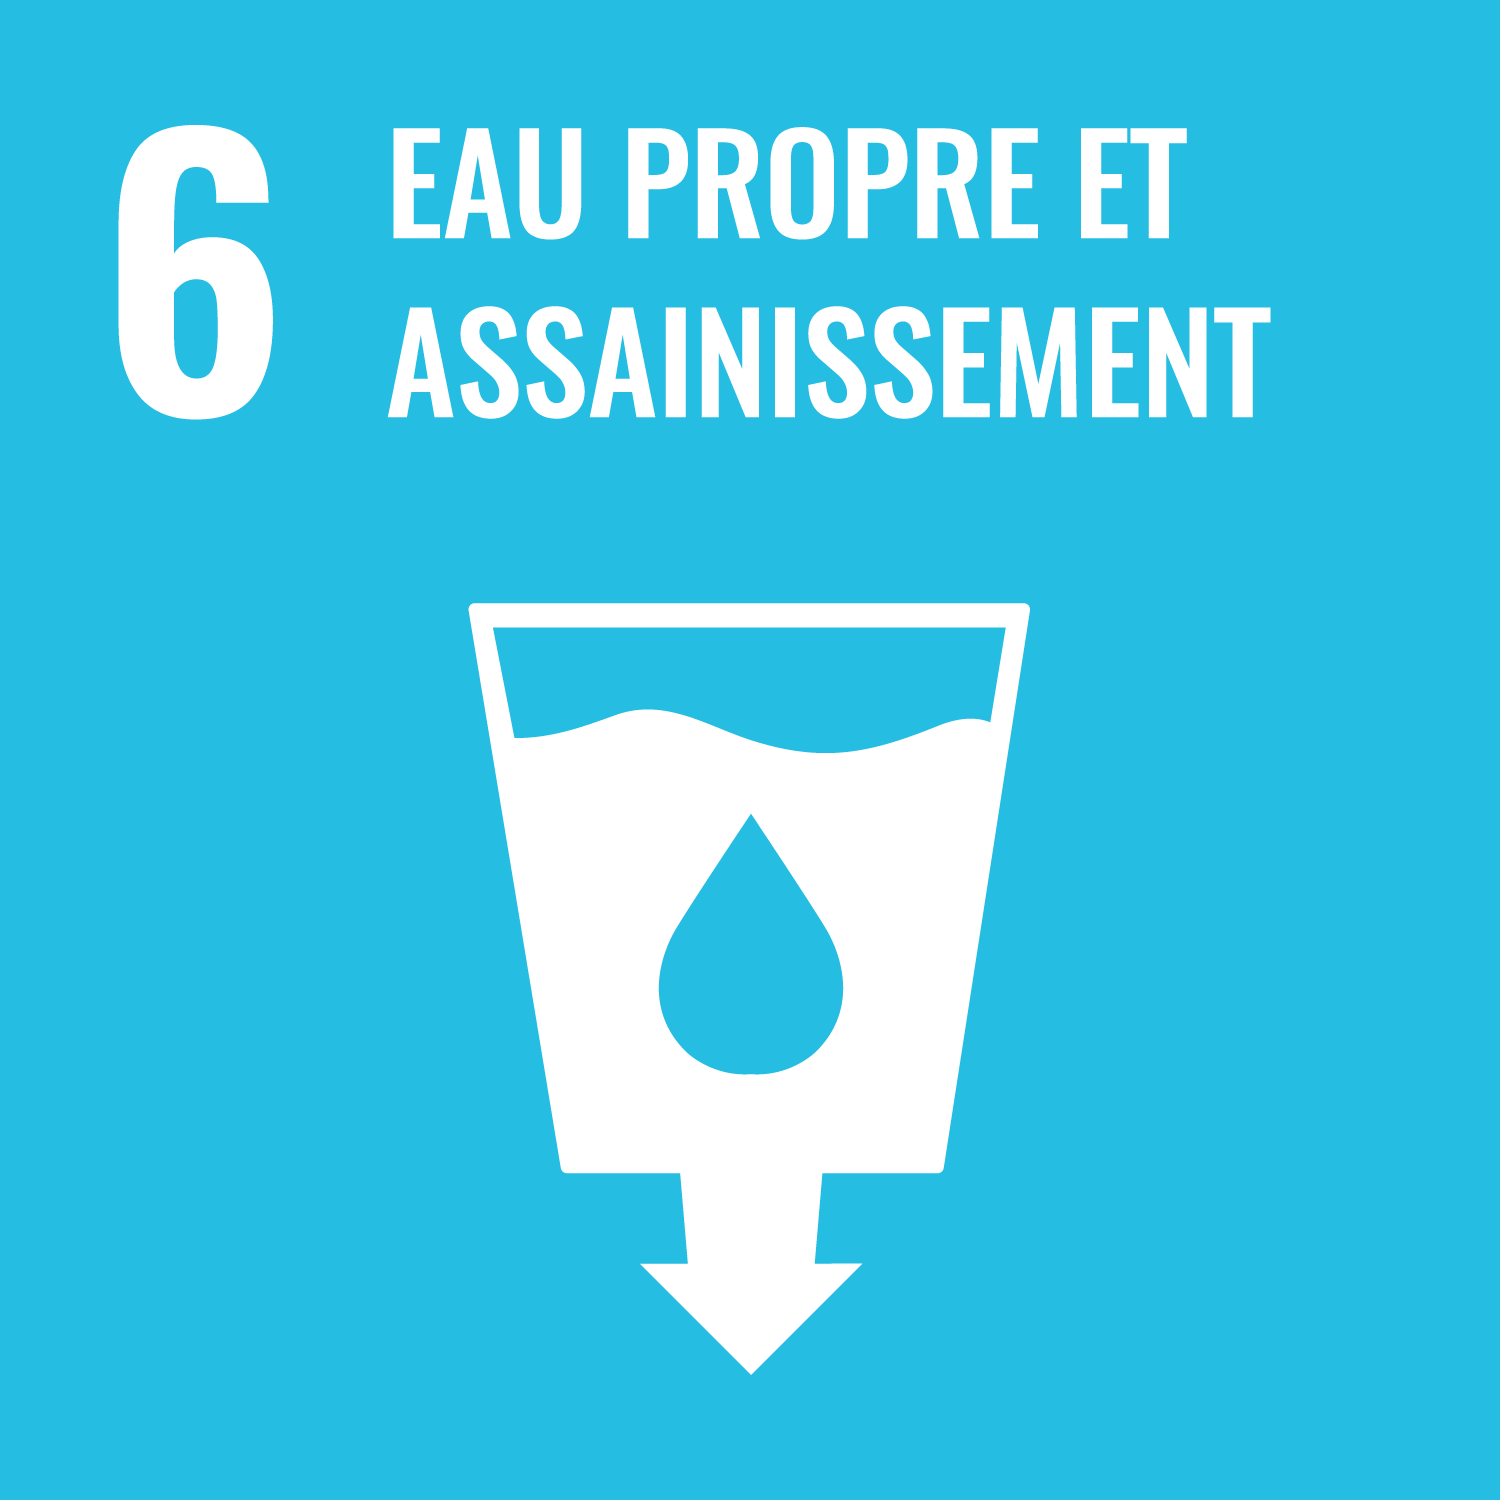 Objectif de Développement Durable de l'O.N.U. 6 : eau propre et assainissement